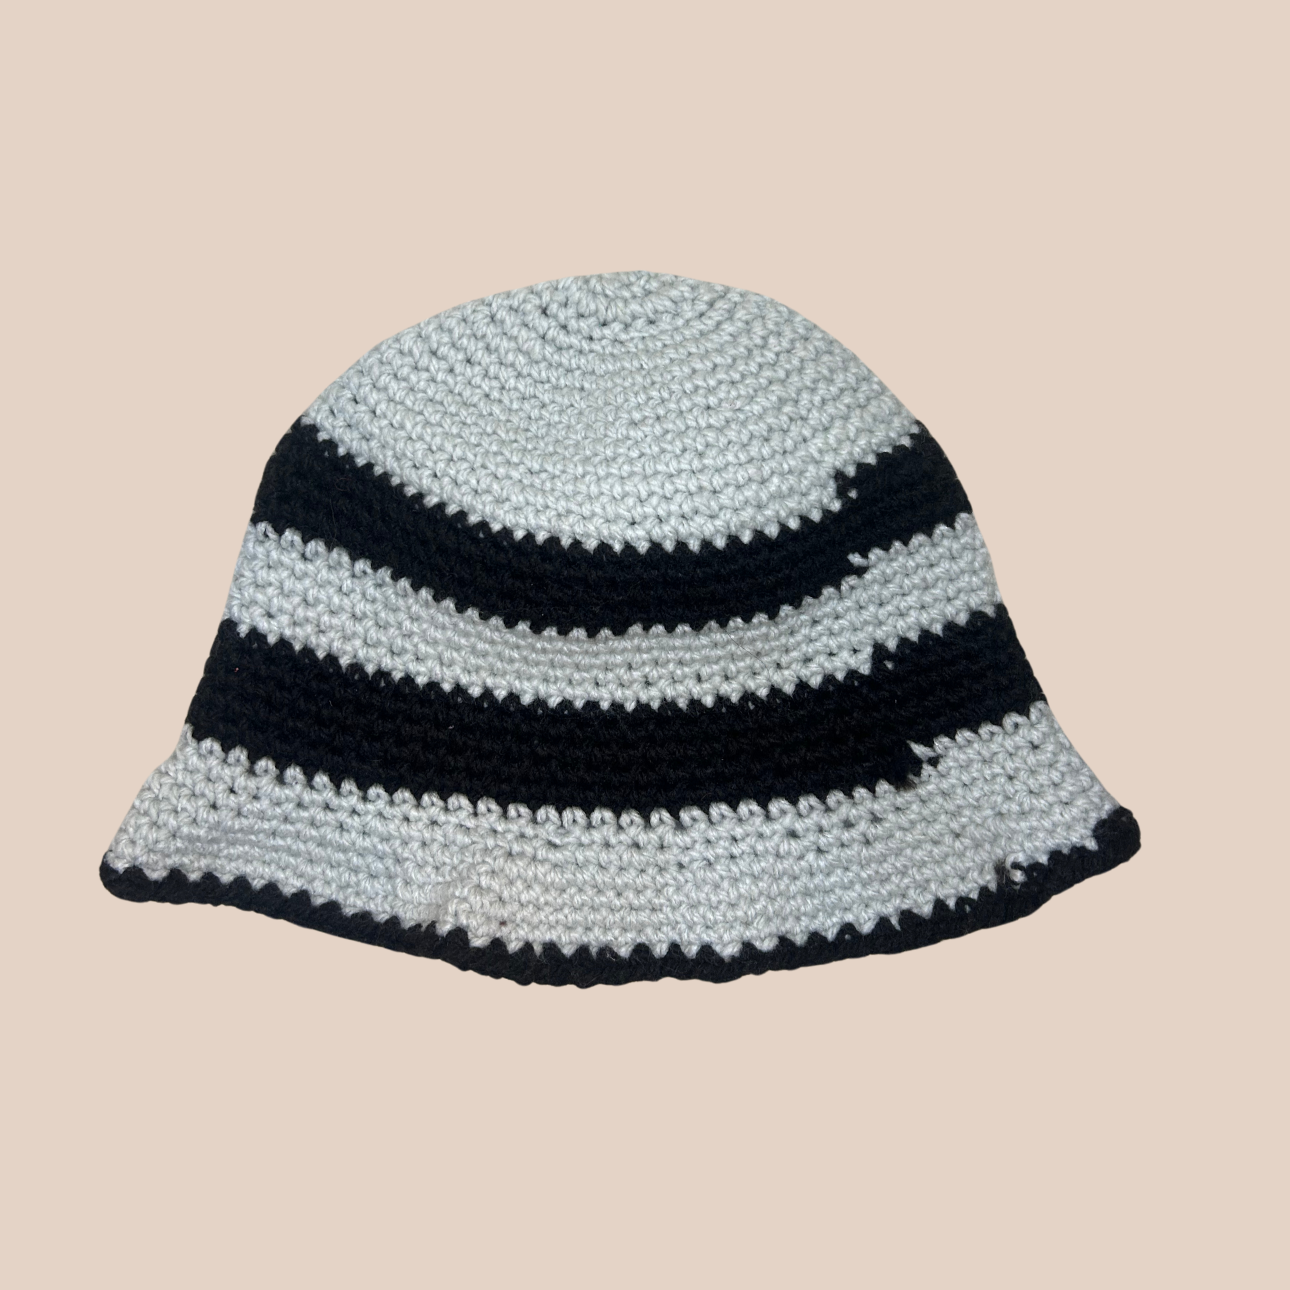 Un bucket hat rayé noir et gris crocheté en laine et acrylique